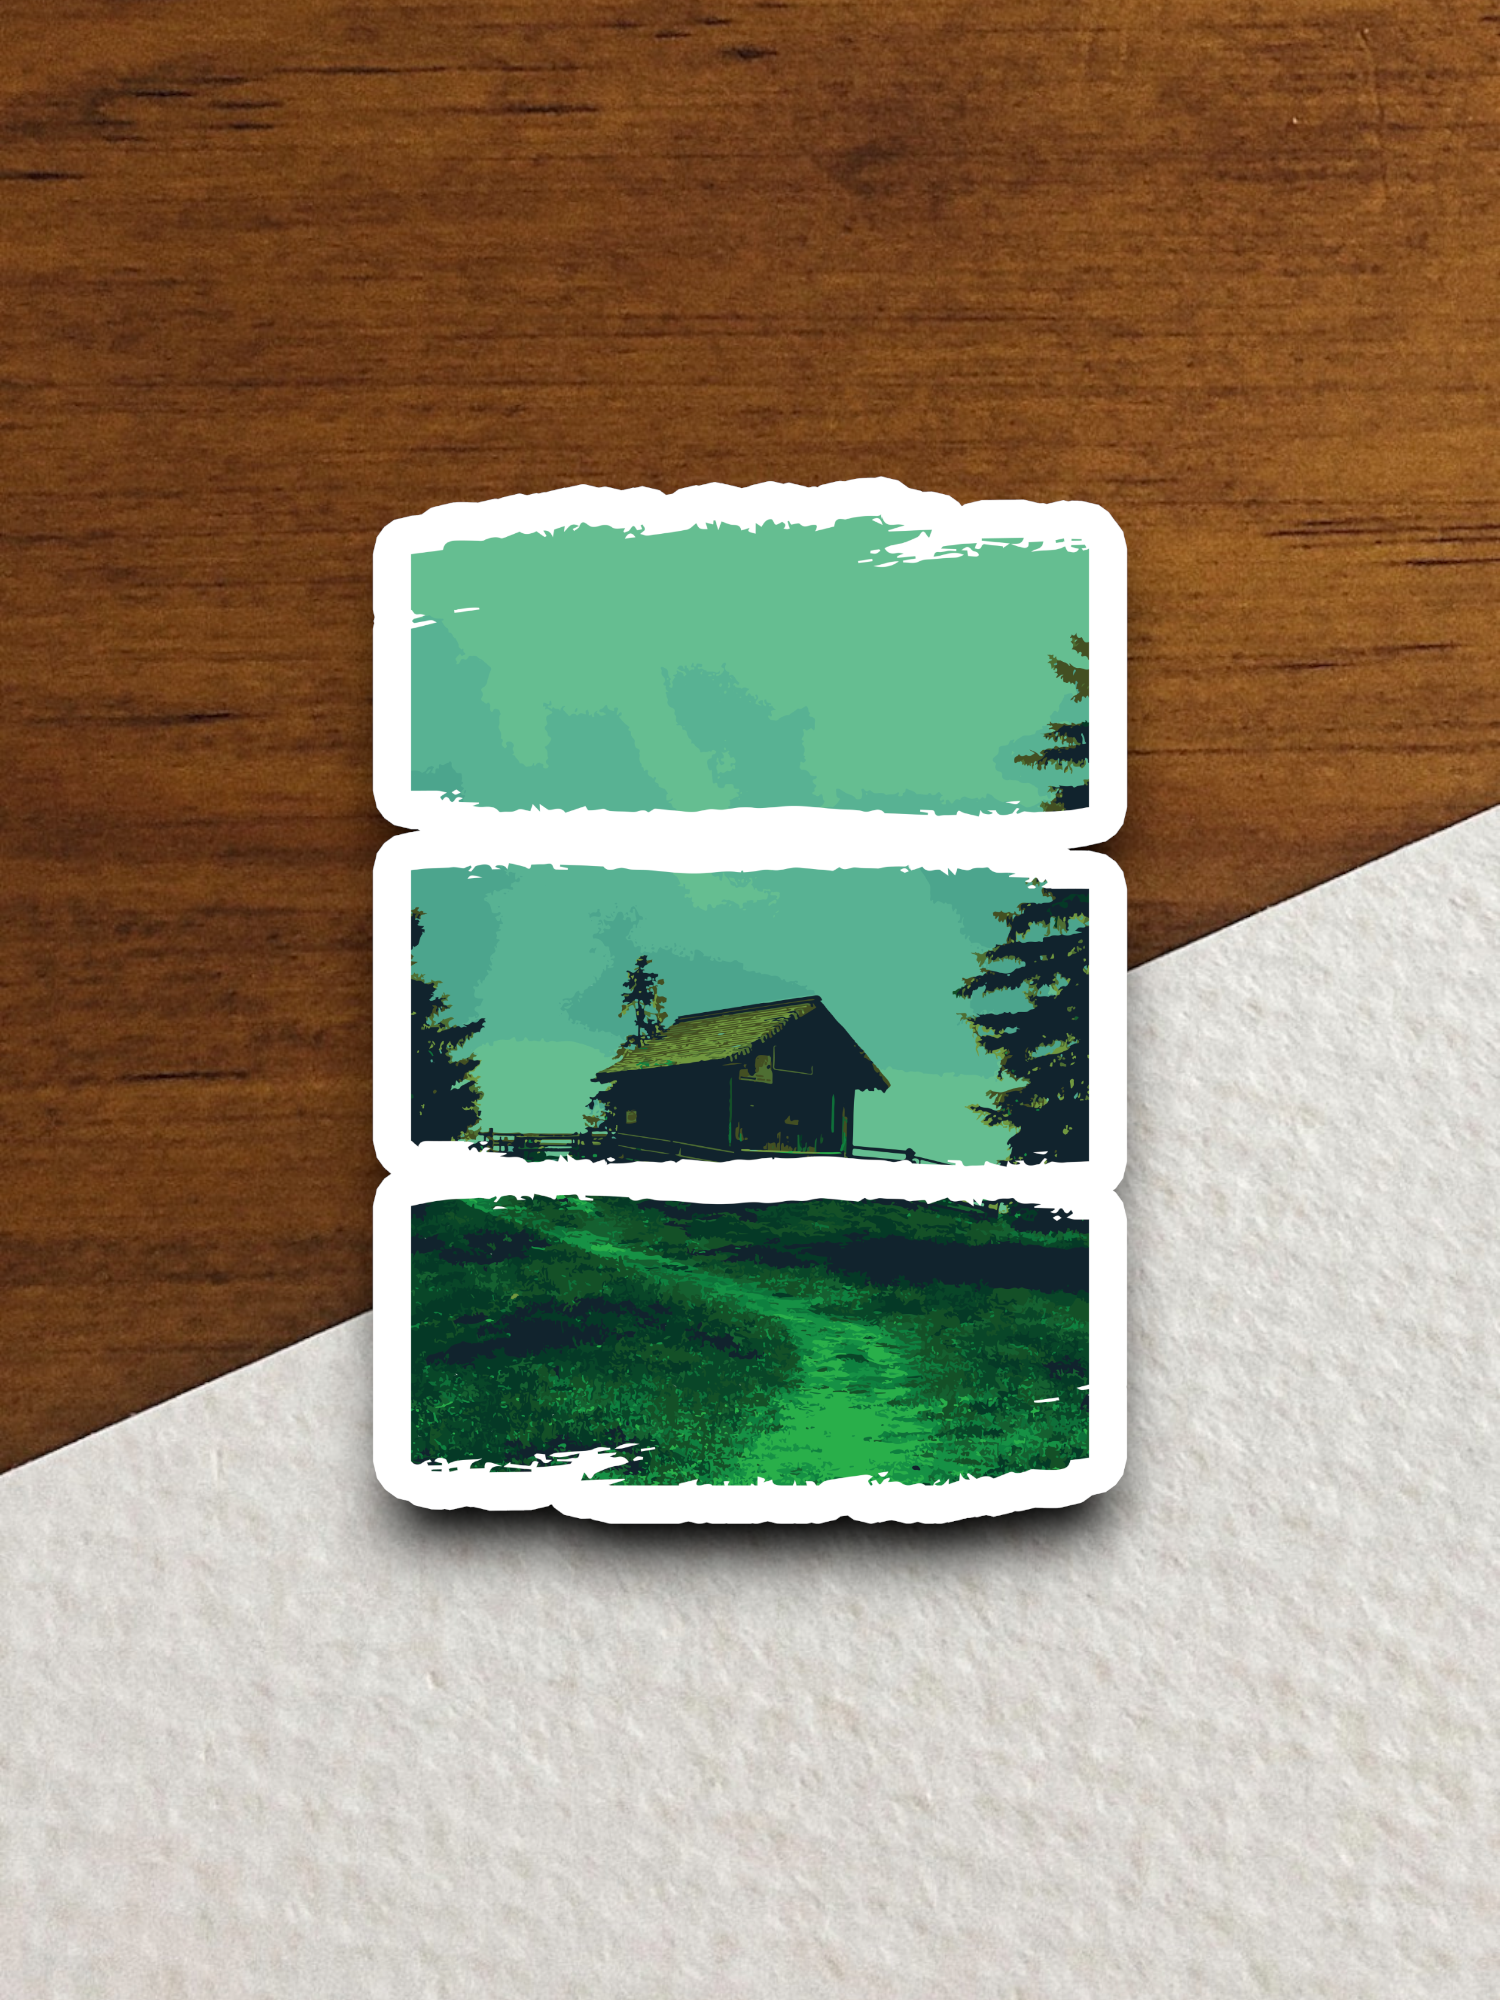 Artistic Cabin Scene - Travel Sticker